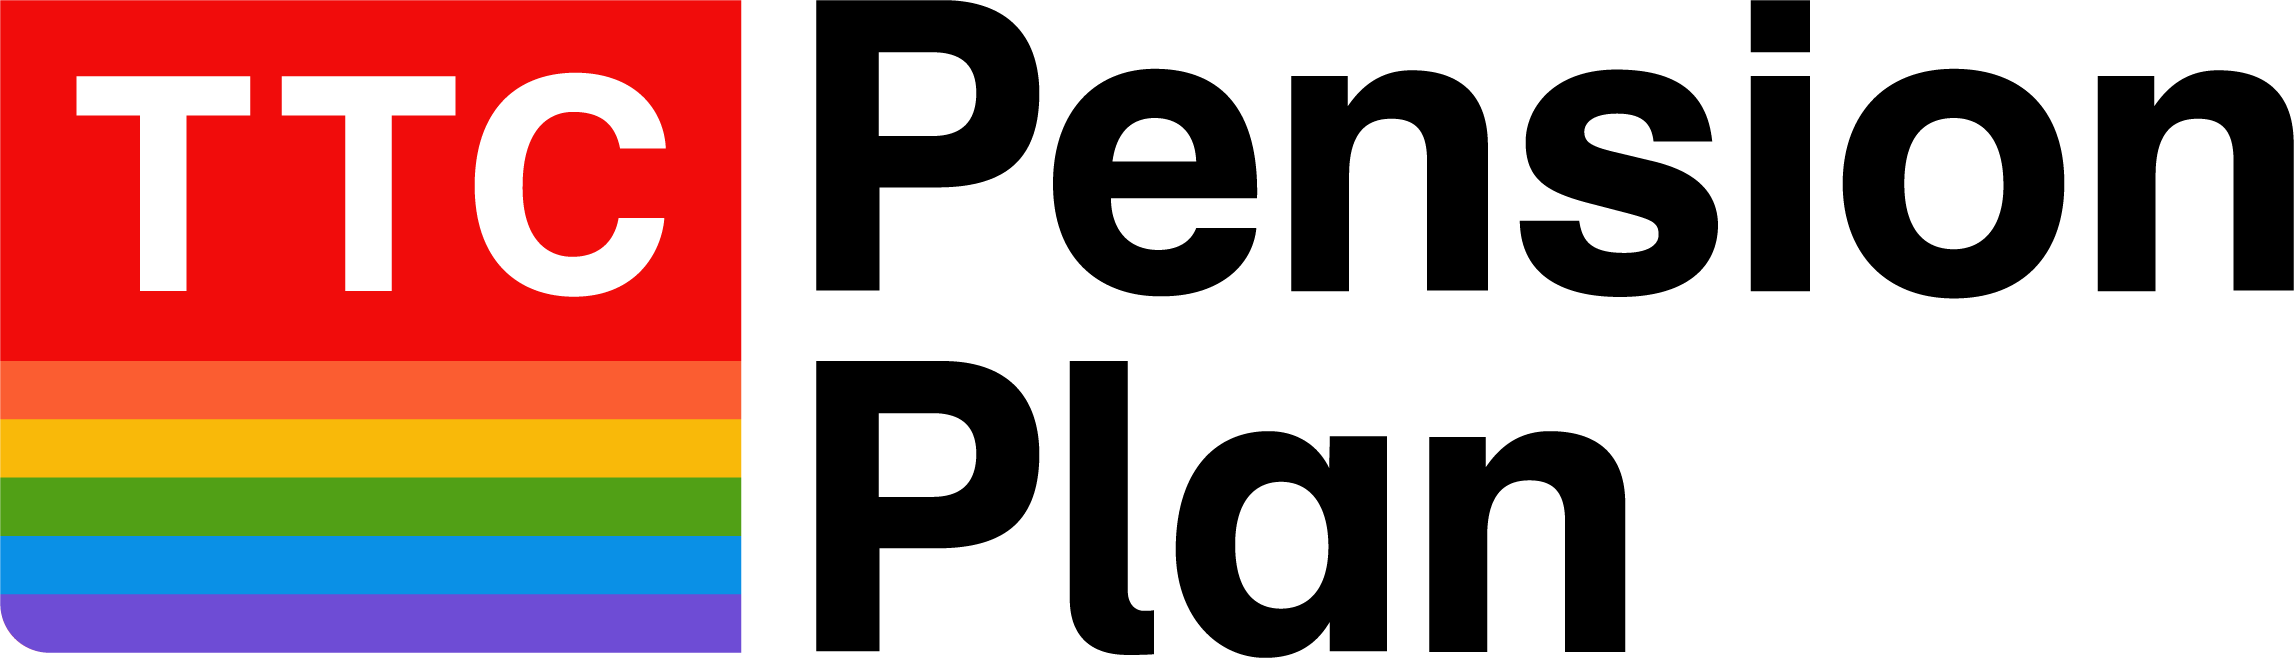 ttcpp logo